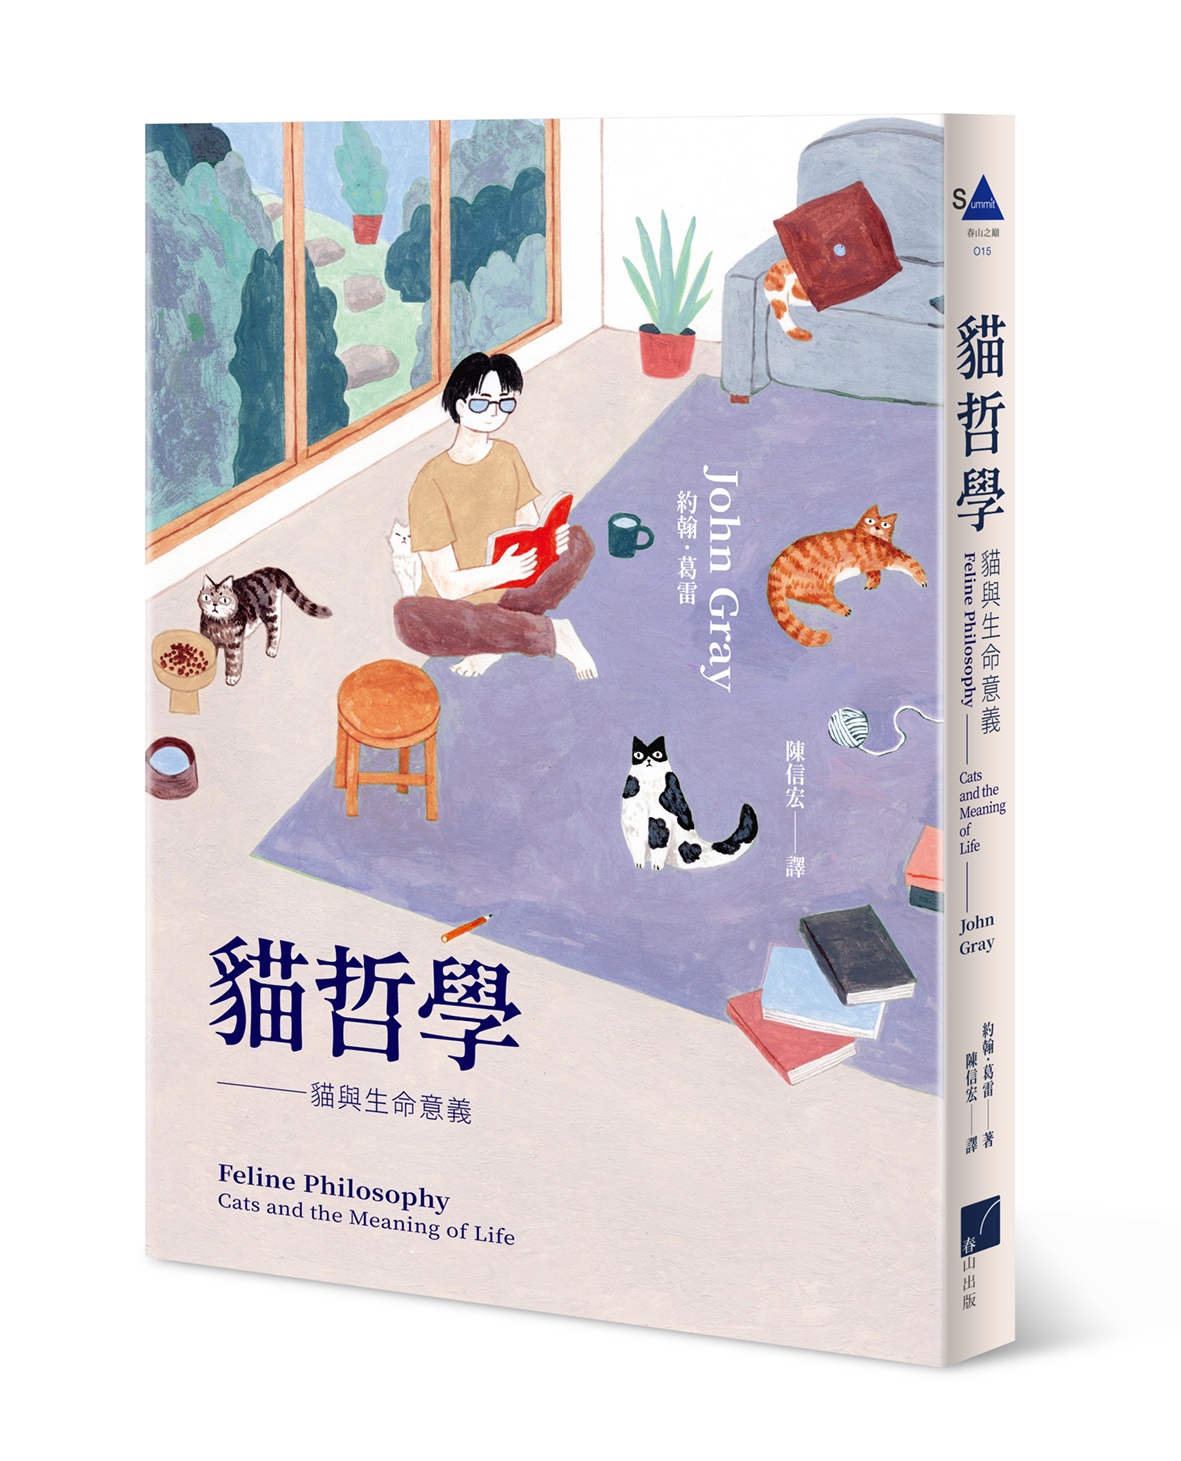 《貓哲學：貓與生命意義》中文版書封。